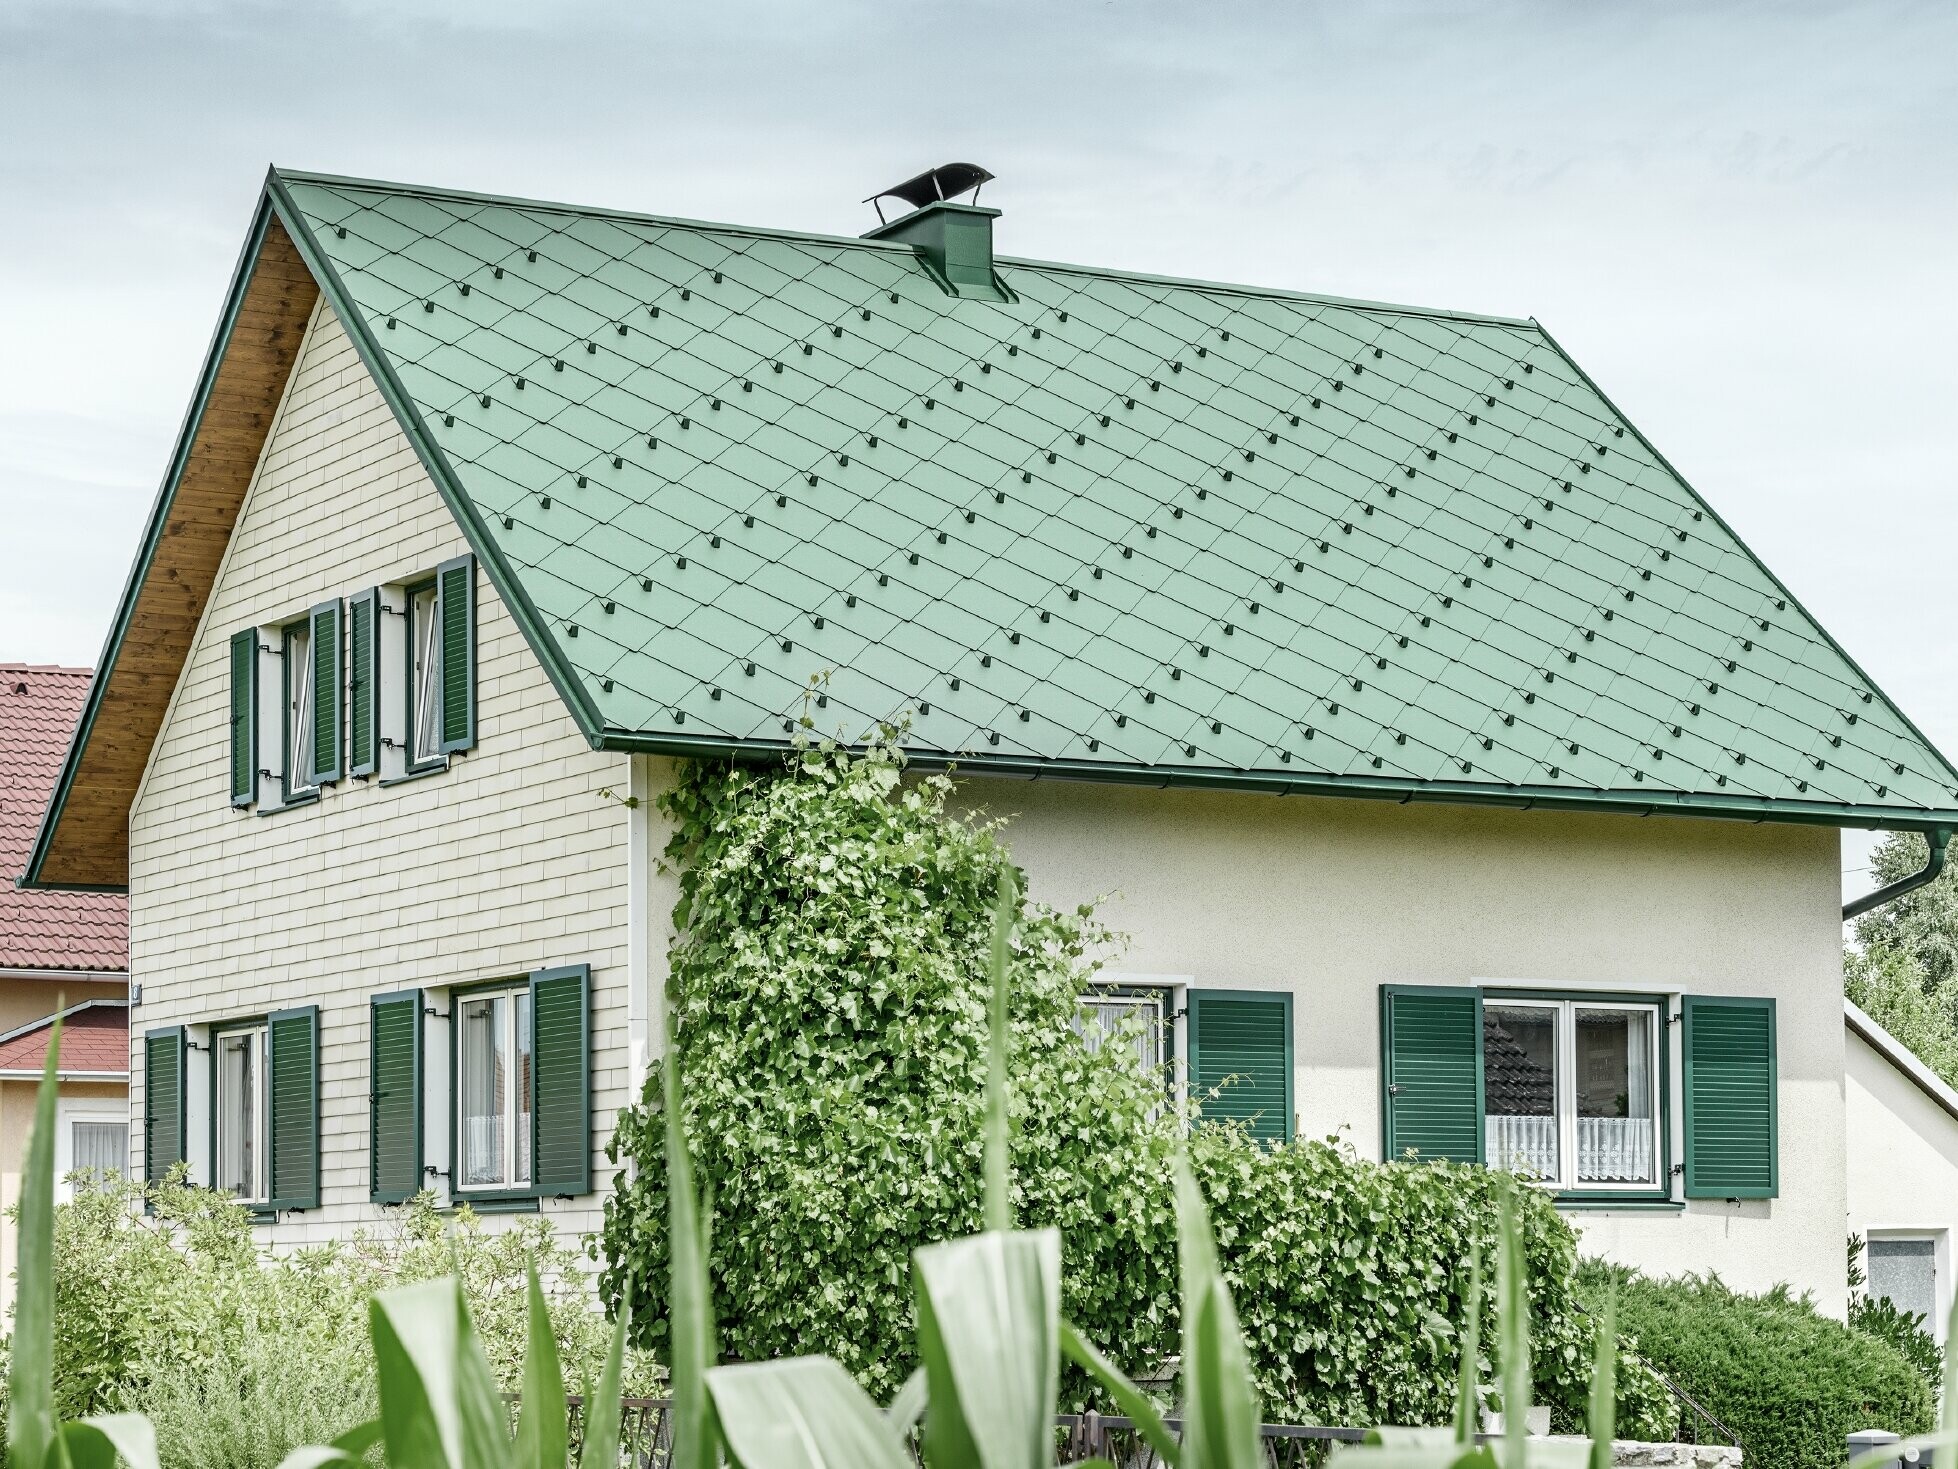 Klassieke eengezinswoning met zadeldak met een dakbedekking van aluminium in mosgroen met groene luiken